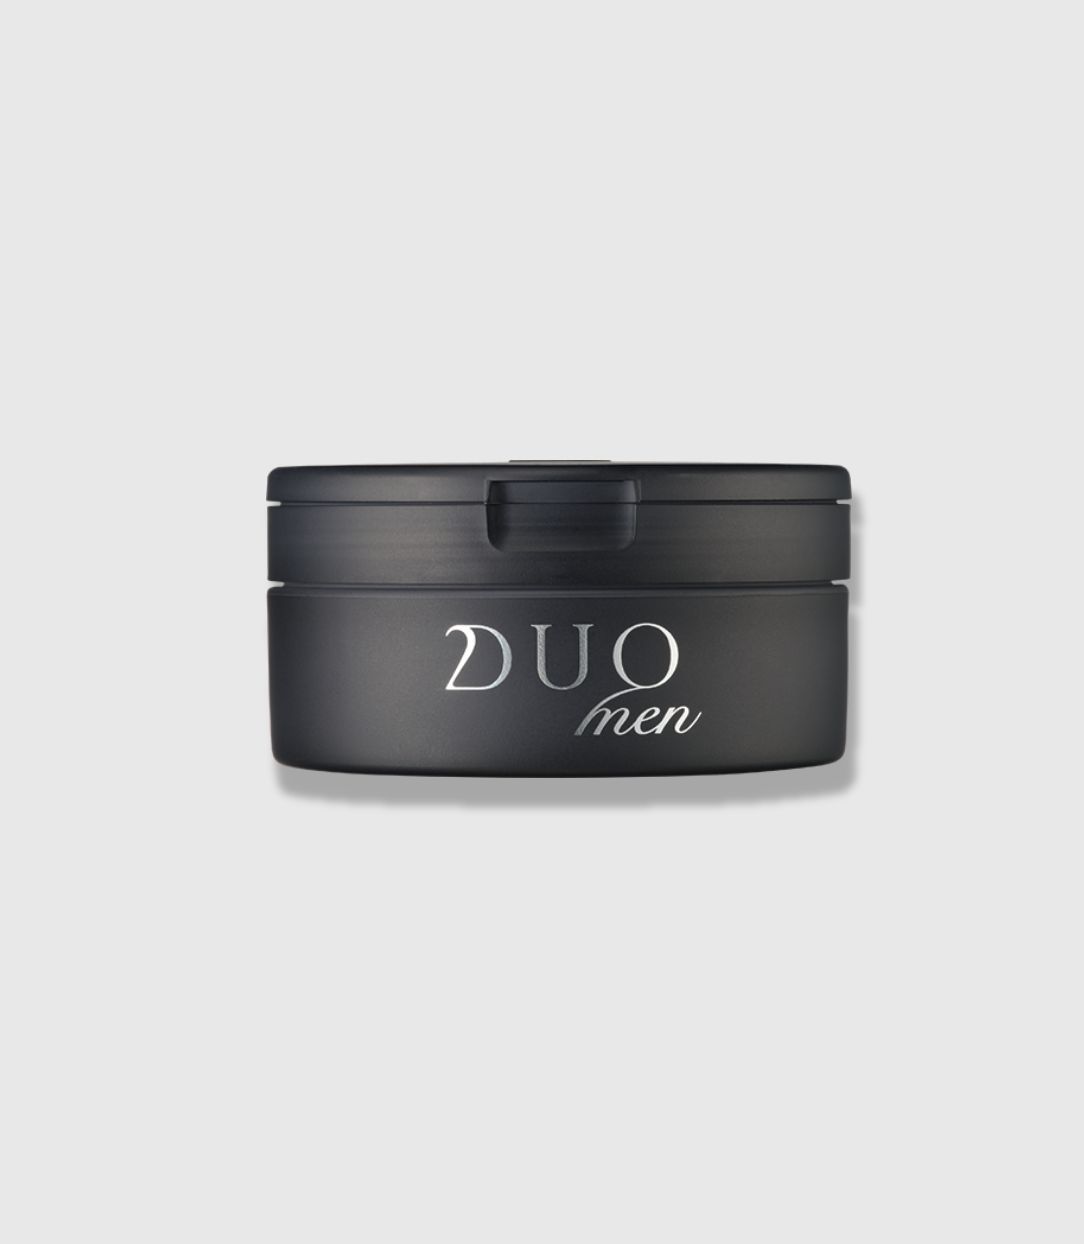 DUO MEN ザ ウォッシュバーム 90g3個セット 黒 メンズ用 洗顔 男性スキンケア/基礎化粧品